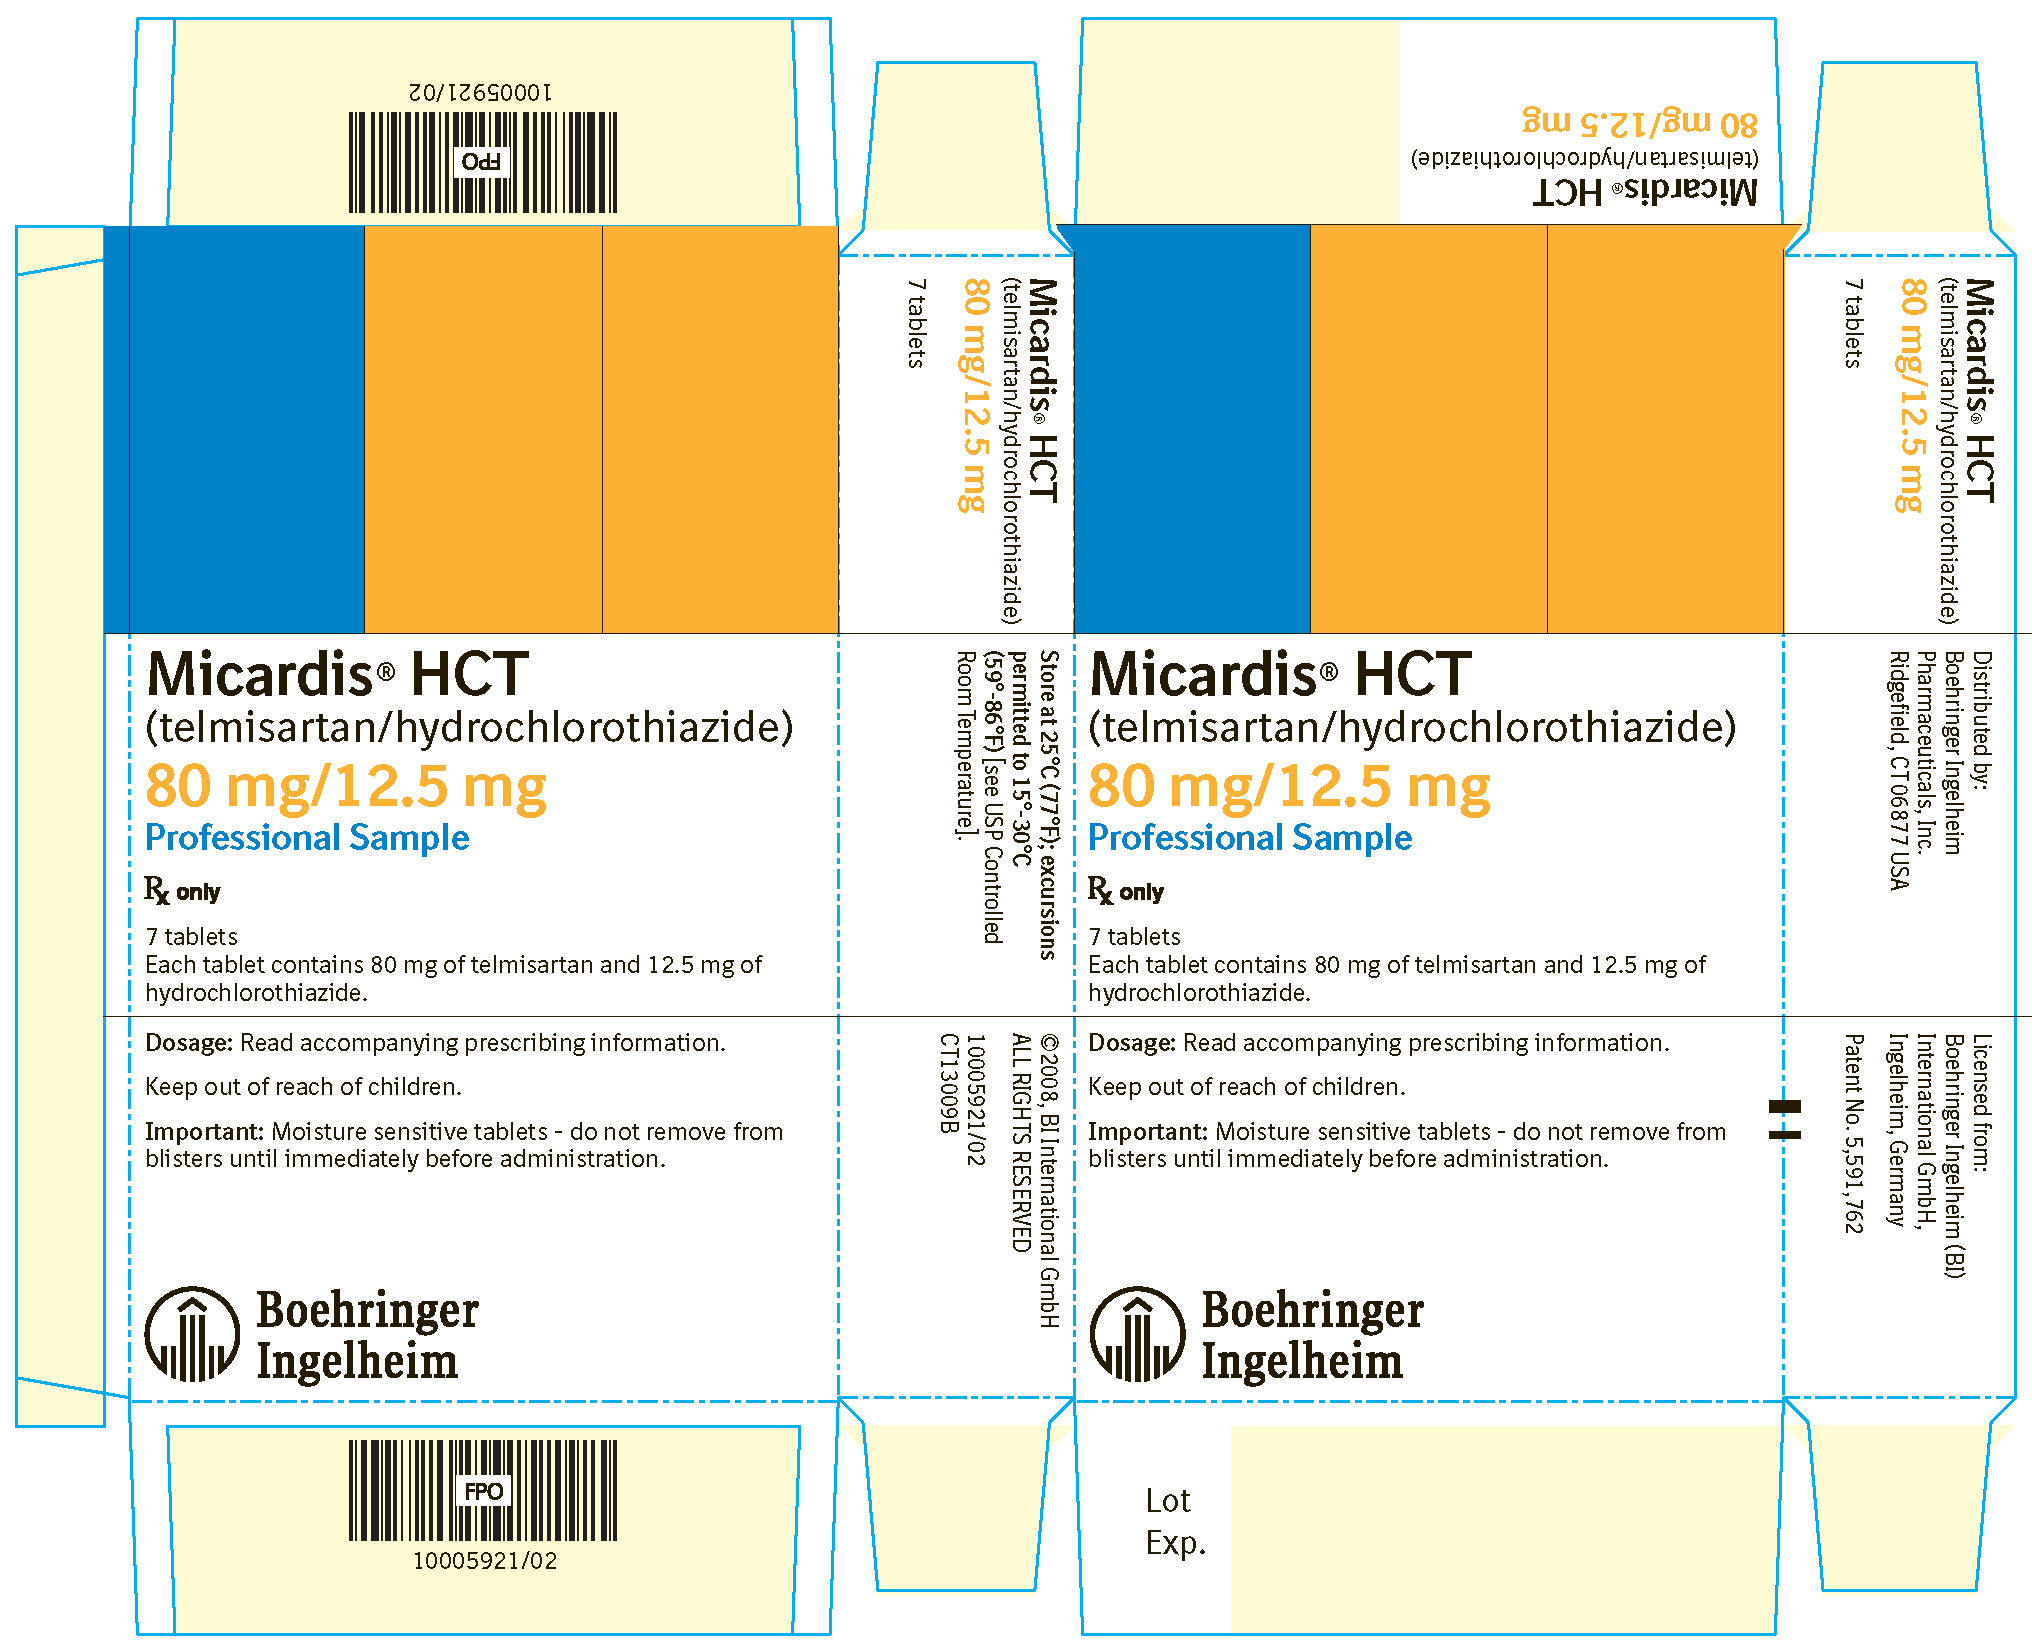 Micardis HCT 80 mg/12.5 mg 7 Tablets NDC 0597-0044-70